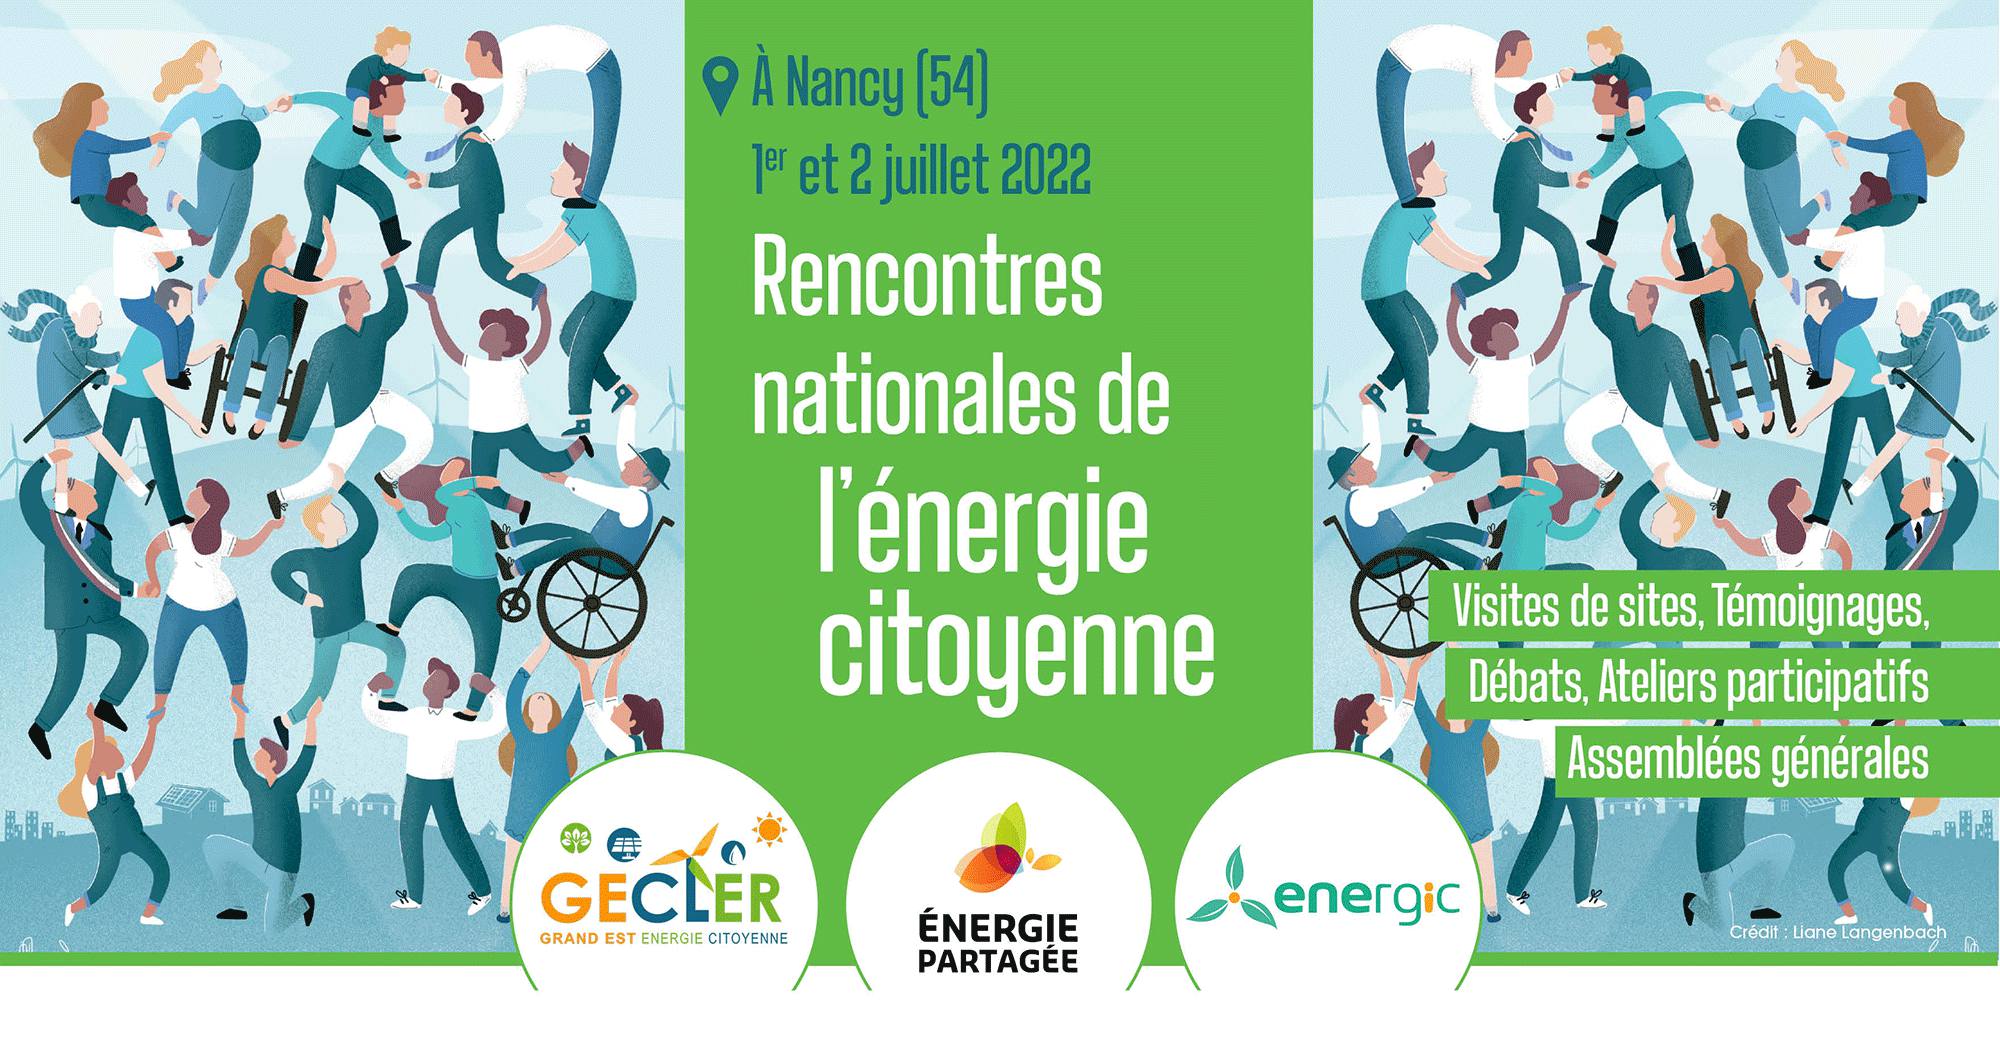 Rencontres nationales de l'énergie citoyenne